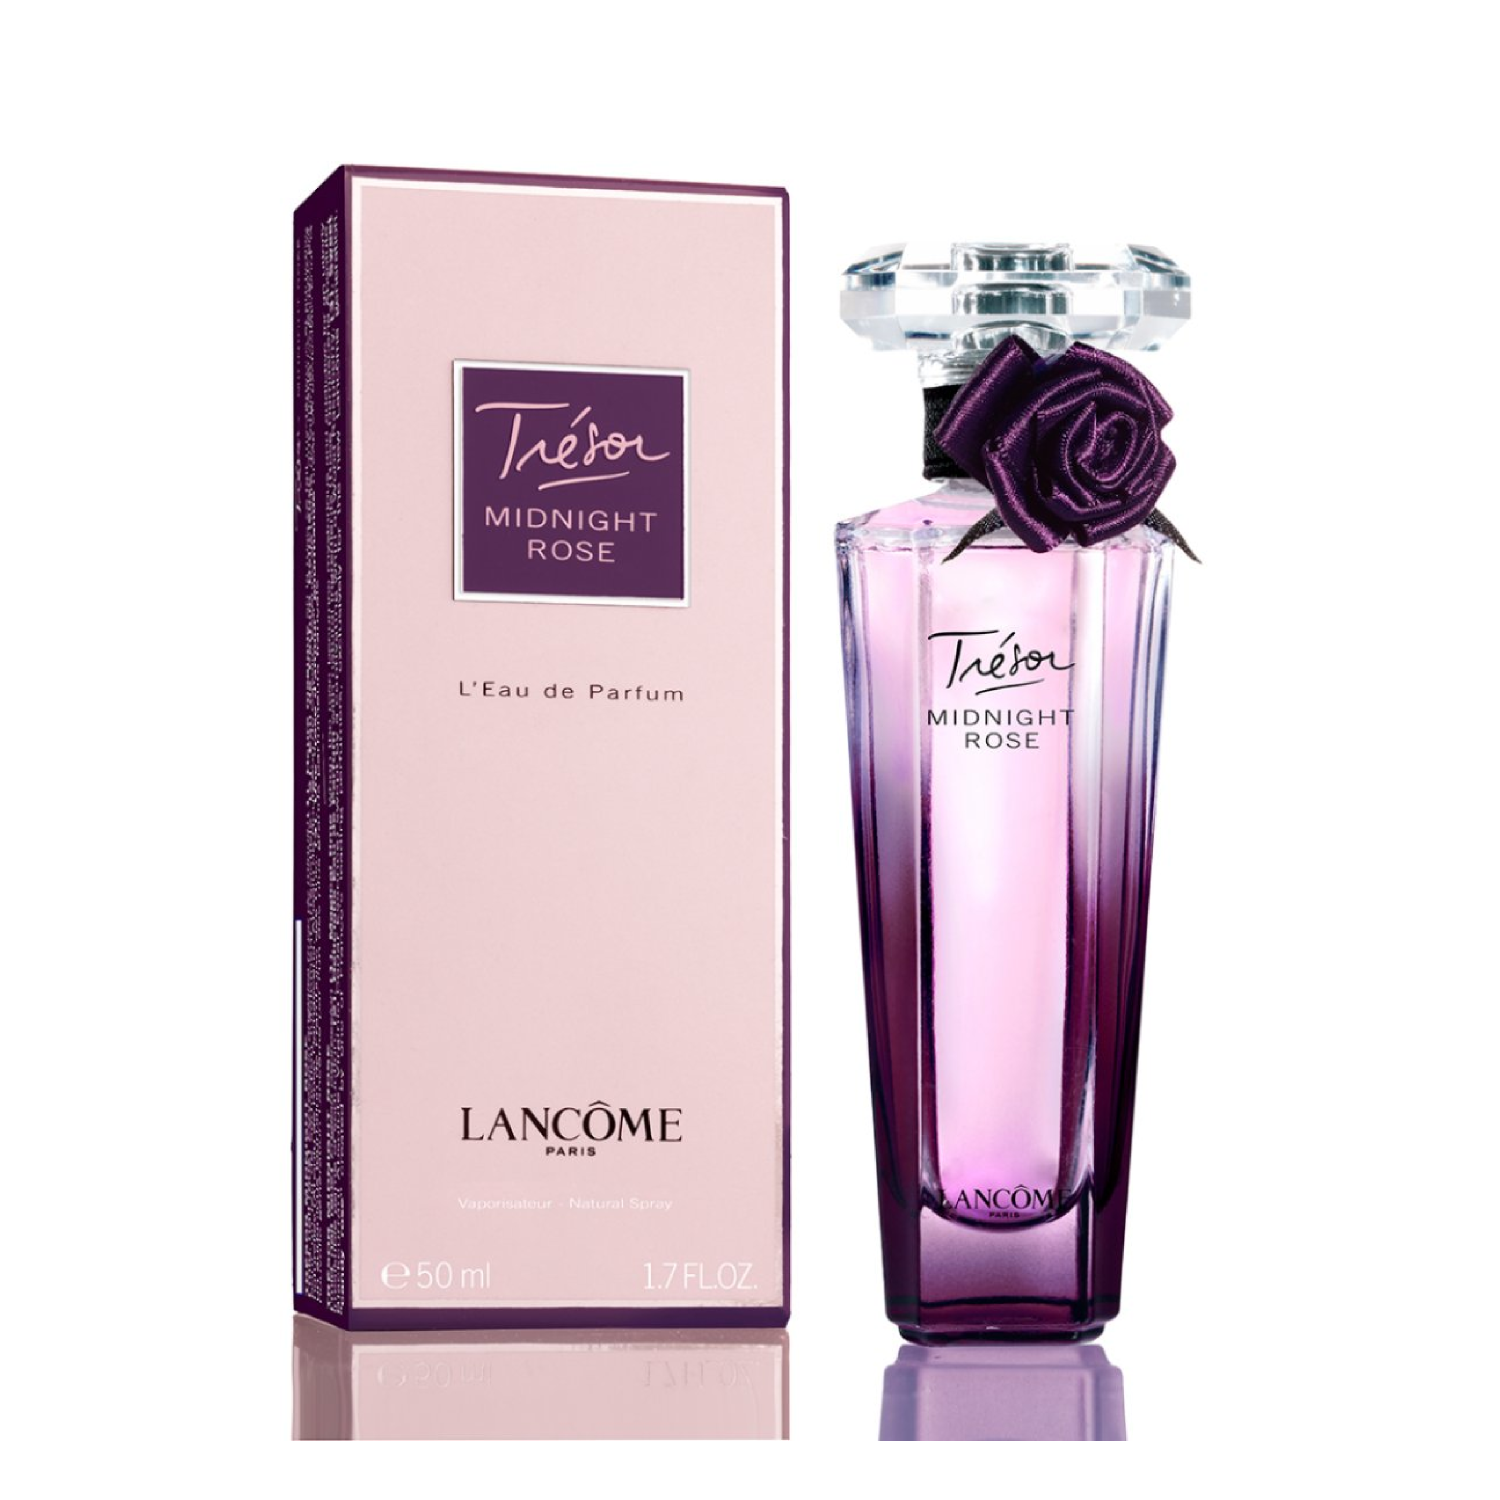 Купить с гарантией качества Парфюмерная вода Lancome Tresor Midnight Rose L...